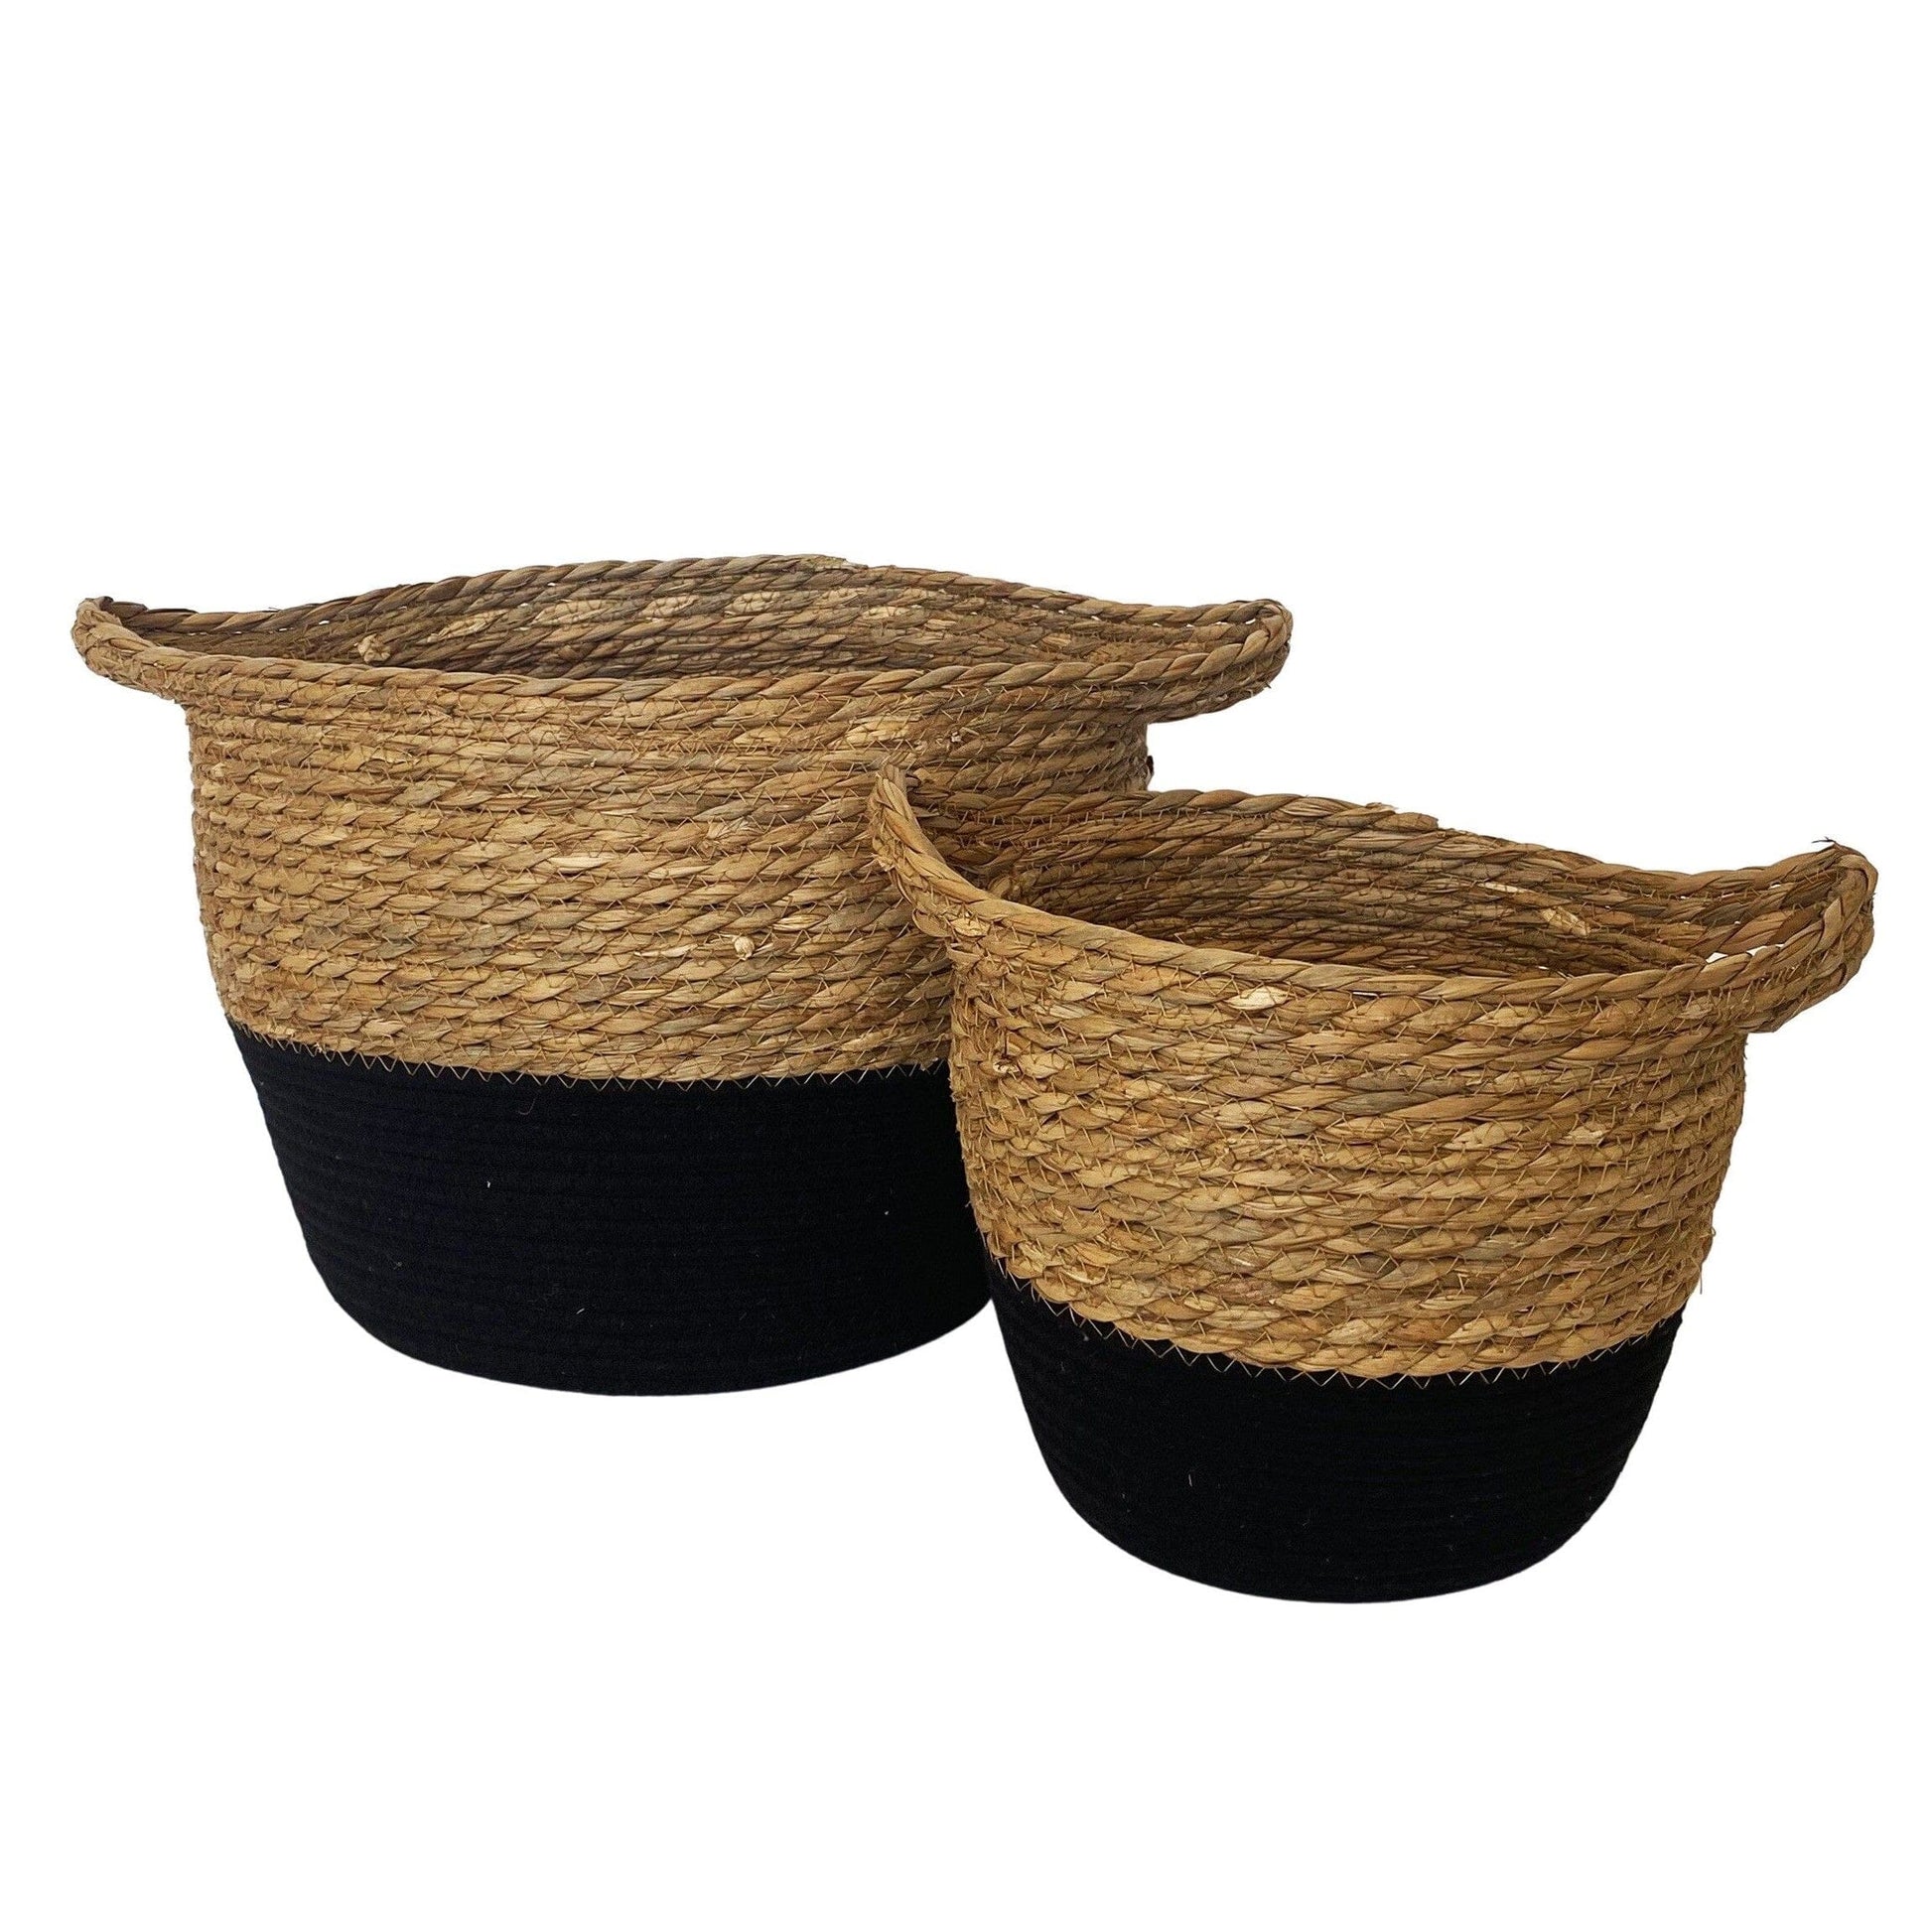 Rattan Basket - Natural & Black Basket vendor-unknown 